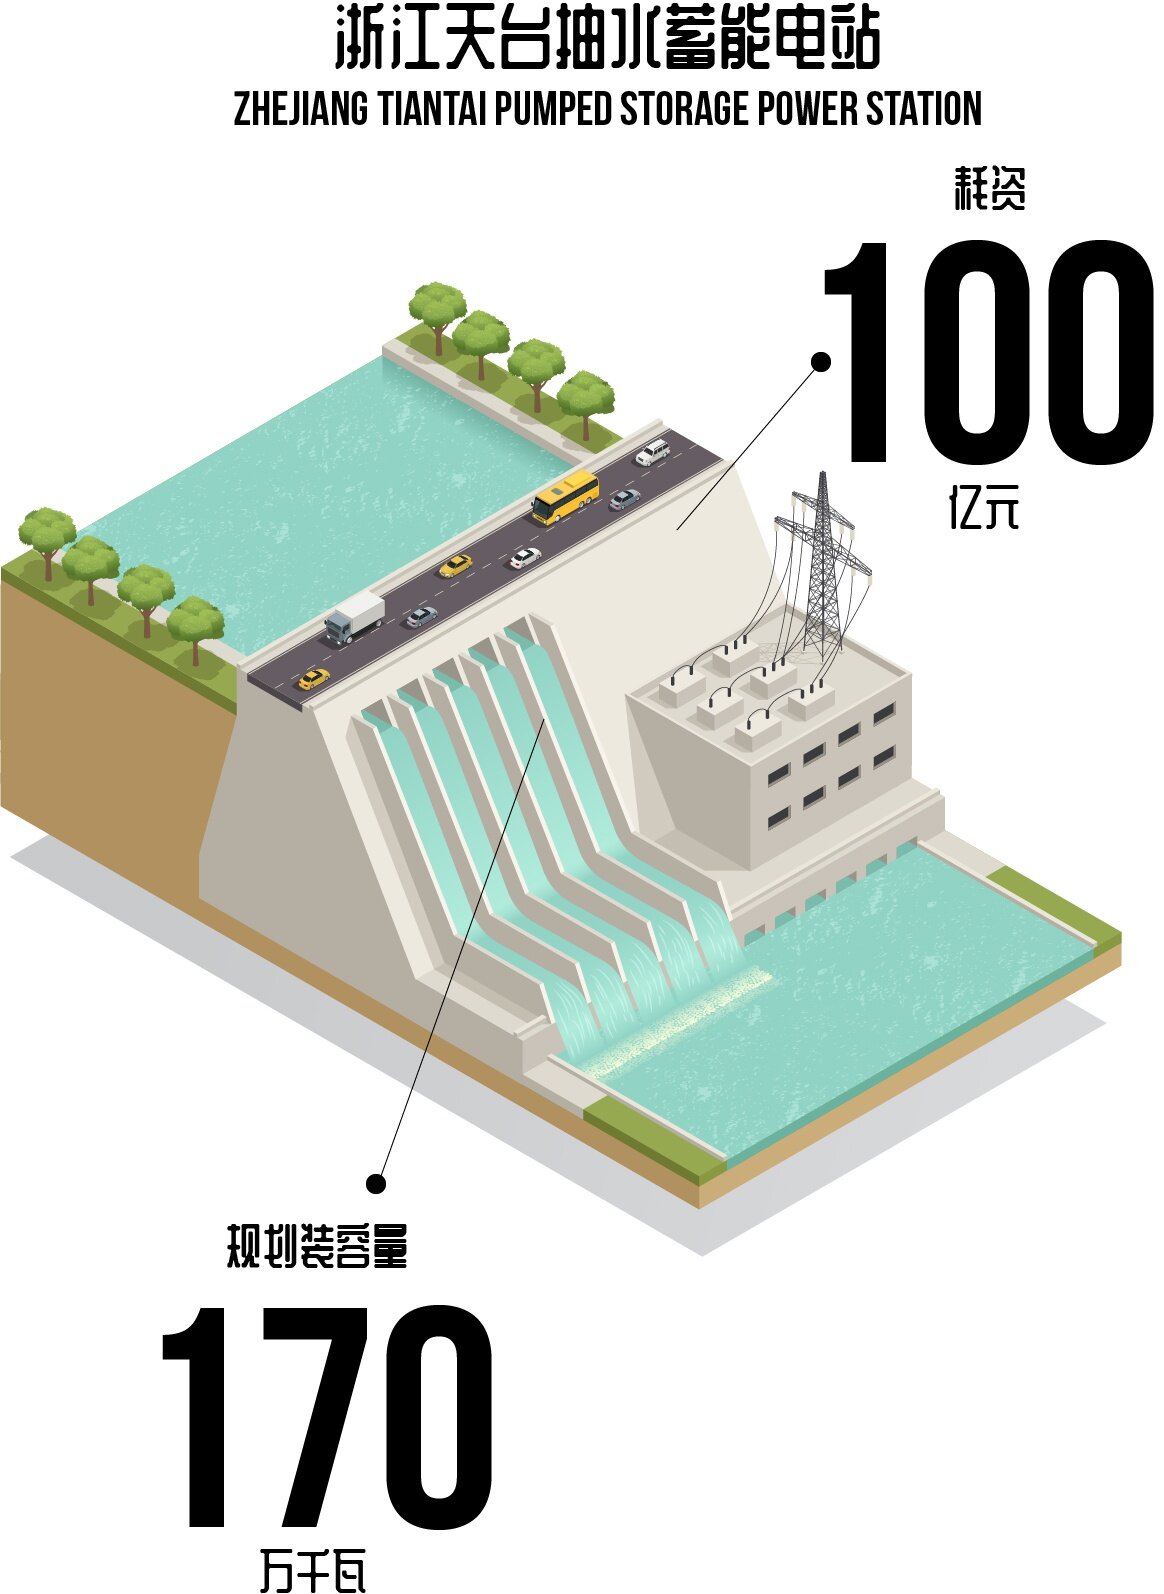 即将开工!浙江天台抽水蓄能电站工程落户台州,耗资约100亿!